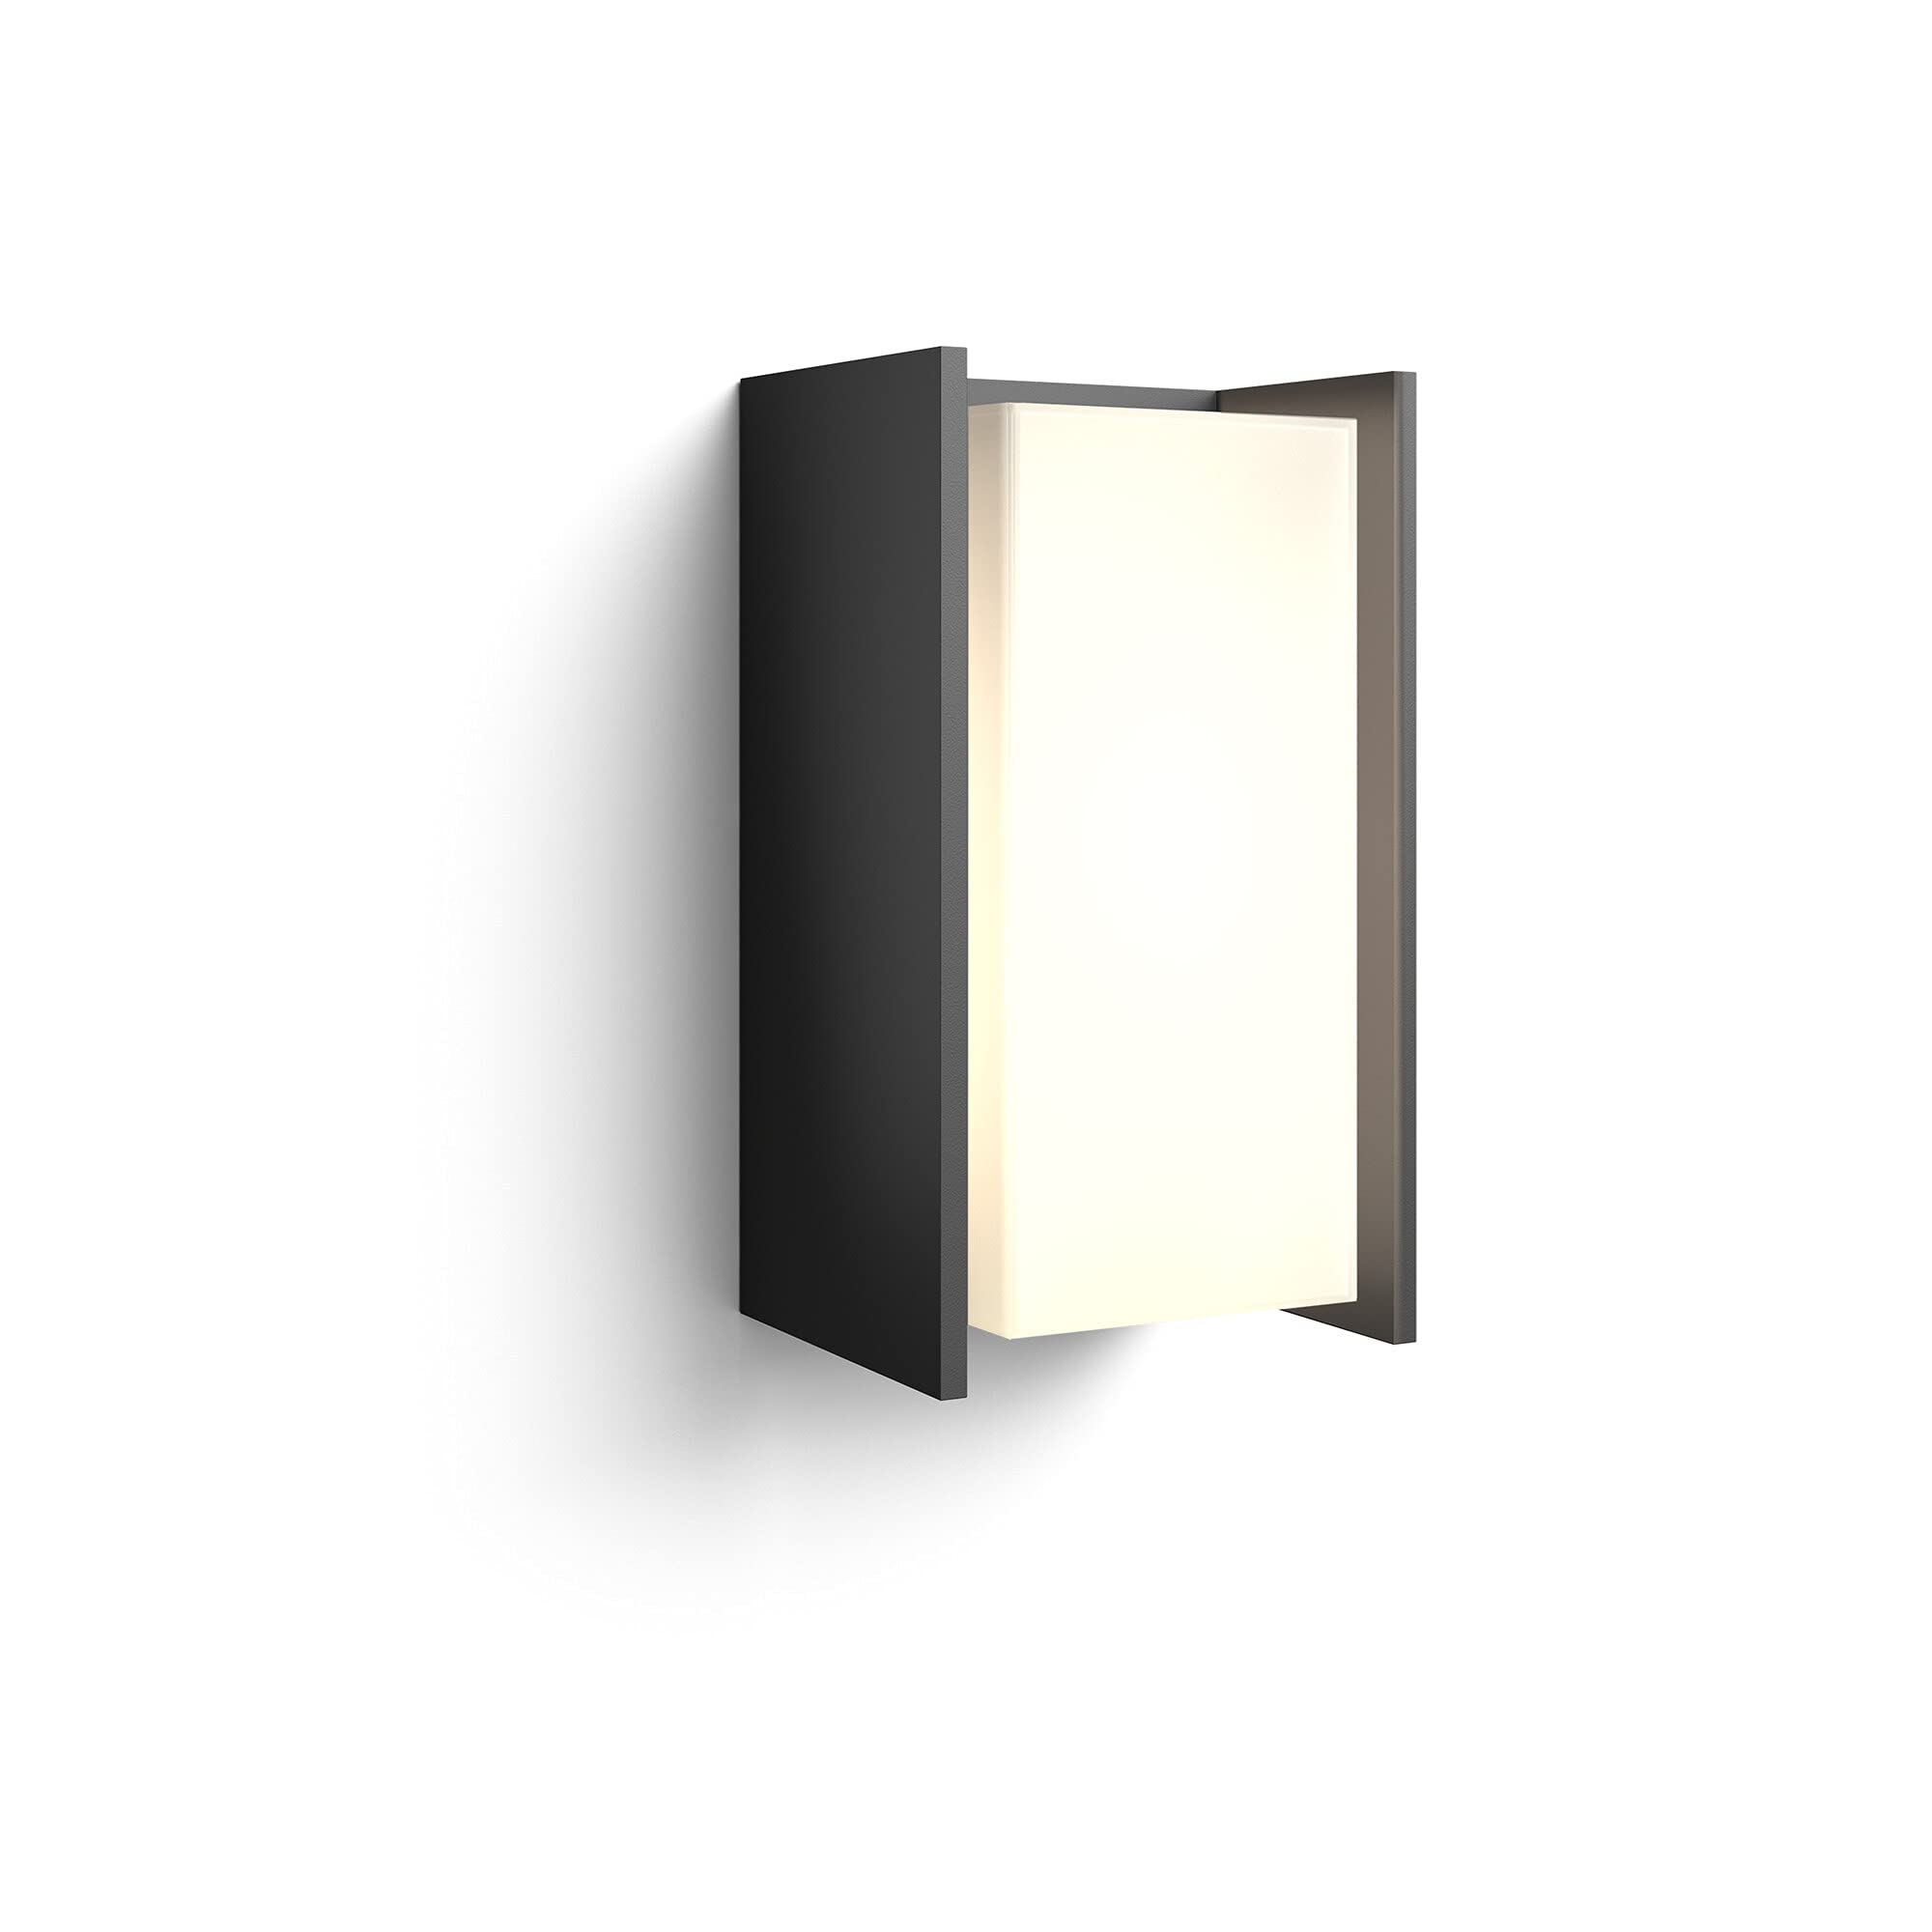 Philips Hue White Turaco Wandleuchte (806 lm), dimmbare Outdoor Wandlampe für das Hue Lichtsystem mit warmweißem Licht, smarte Lichtsteuerung über Sprache und App, anthrazit